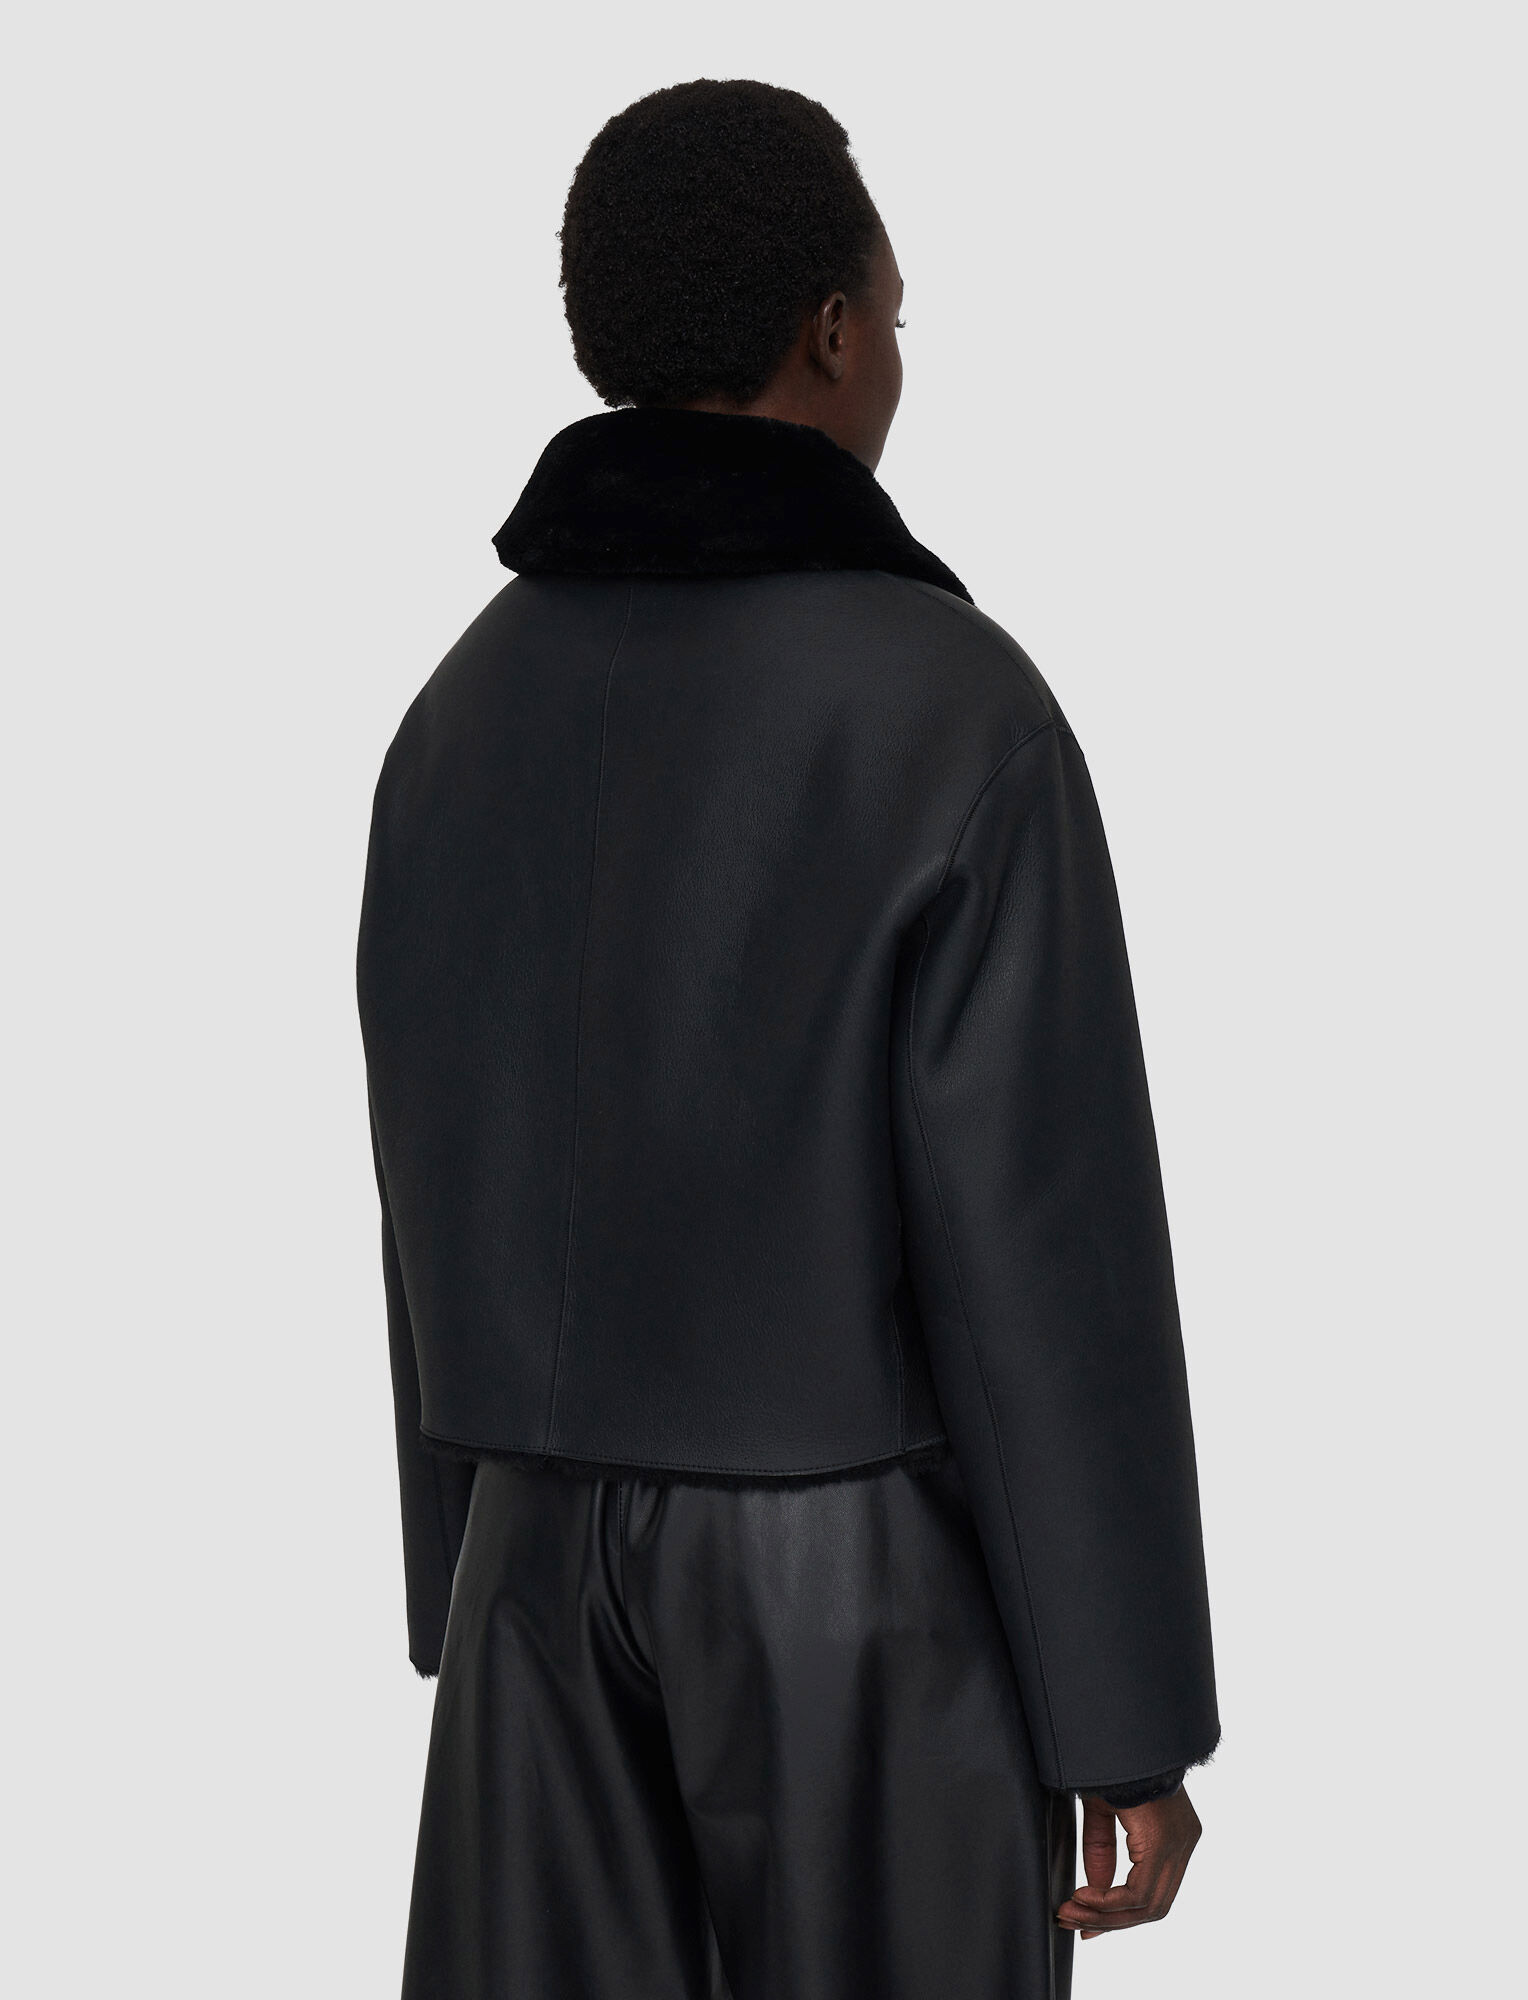 Joseph, Manteau Alloway réversible en peau lainée, in Black